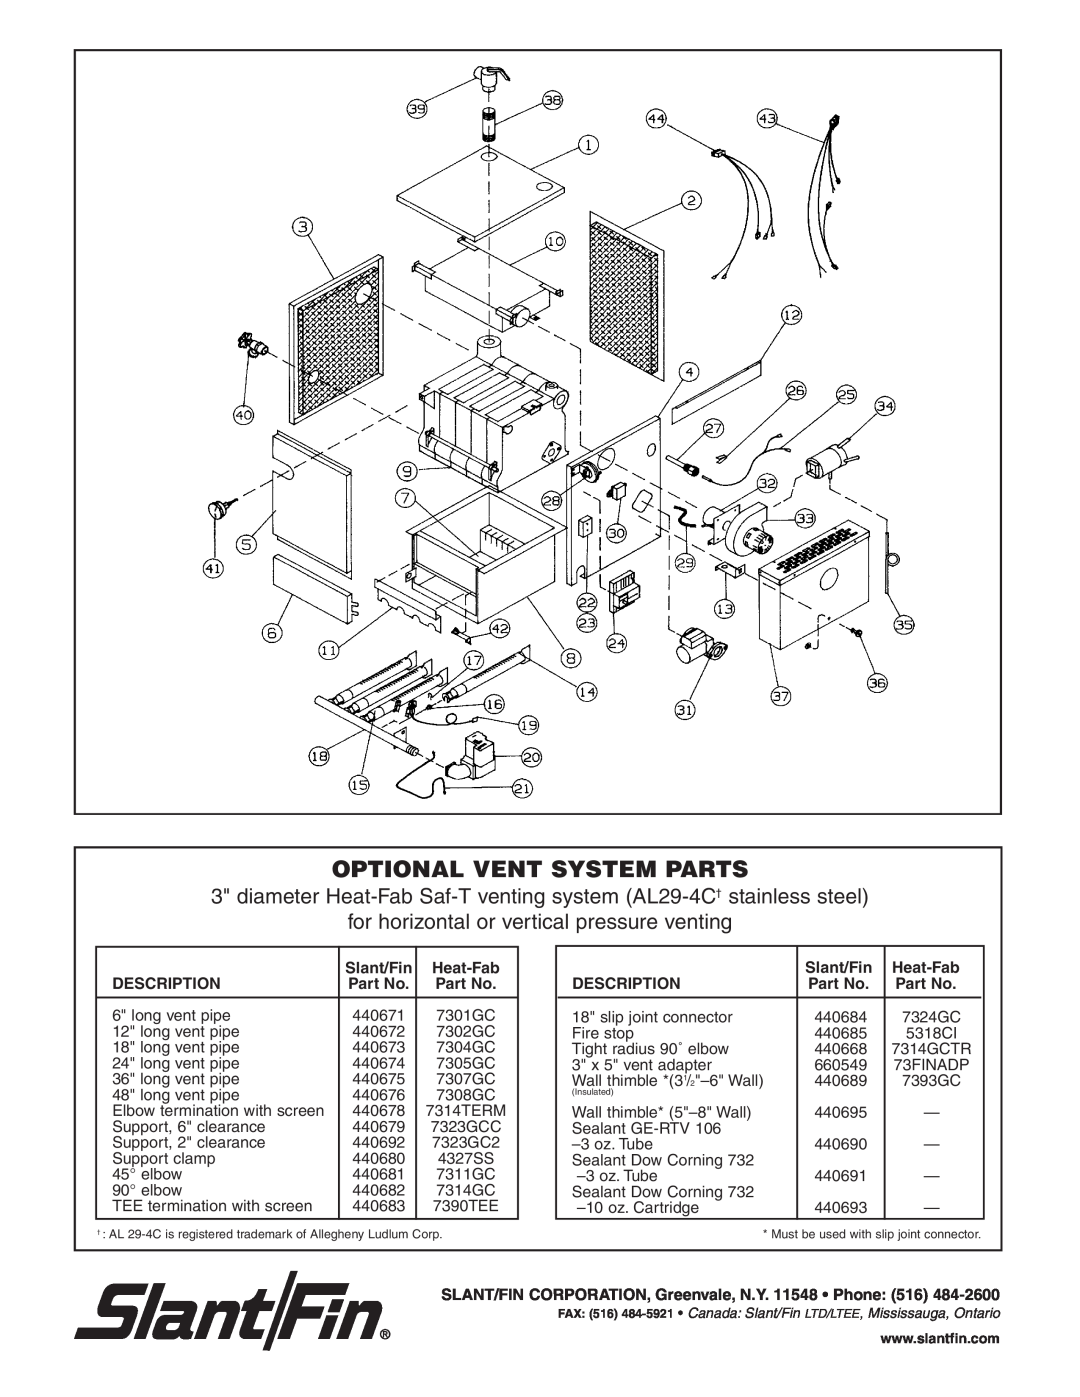 Slant/Fin VH-30, VH-150, VH-90, VH-60, VH-120, VH-180 Optional Vent System Parts, for horizontal or vertical pressure venting 